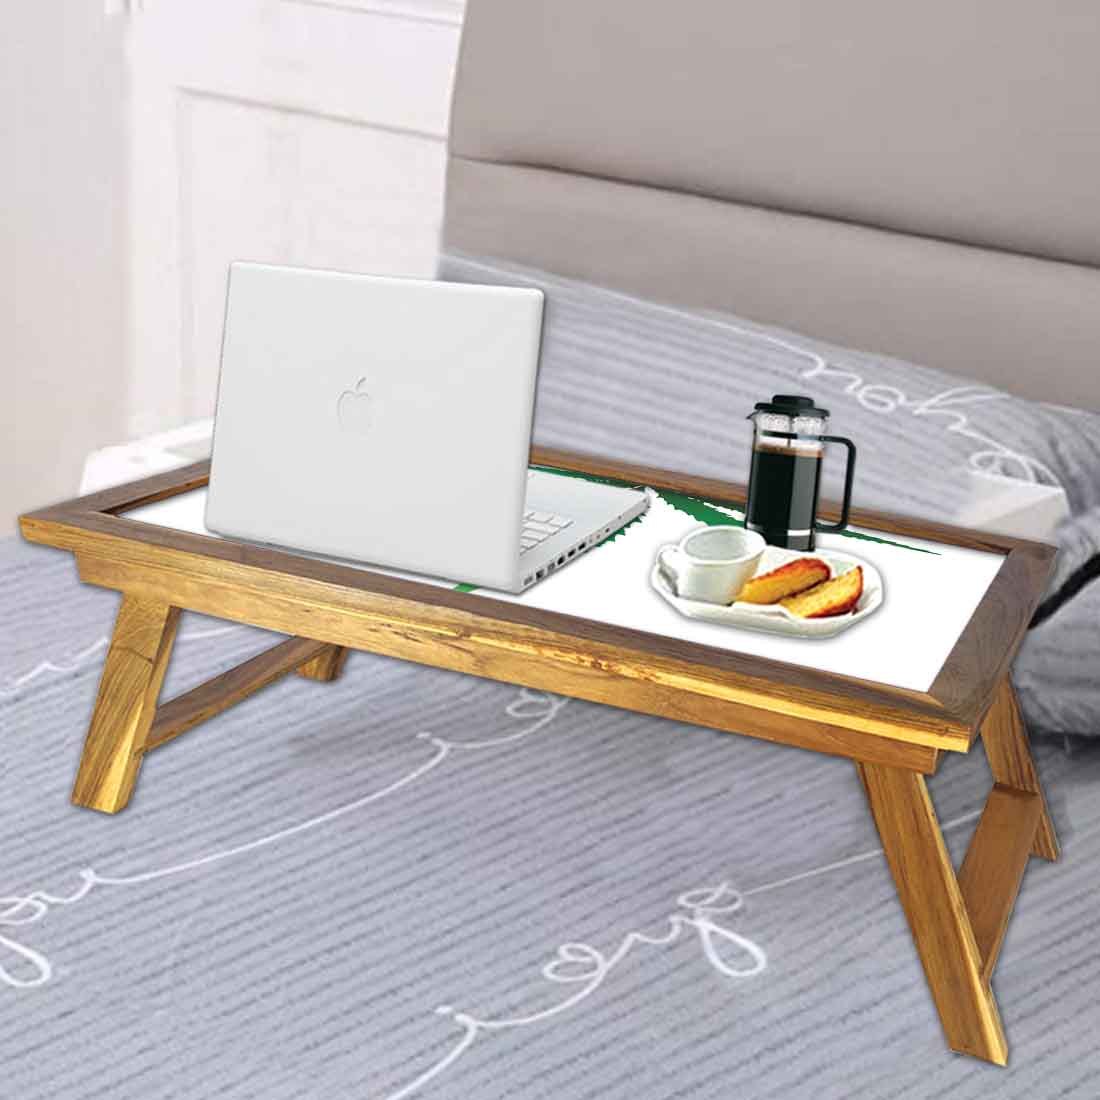 Nutcase Designer Lapdesk Breakfast Bed Table-Foldable Teak Wooden Study Desk - Green Leaf Nutcase